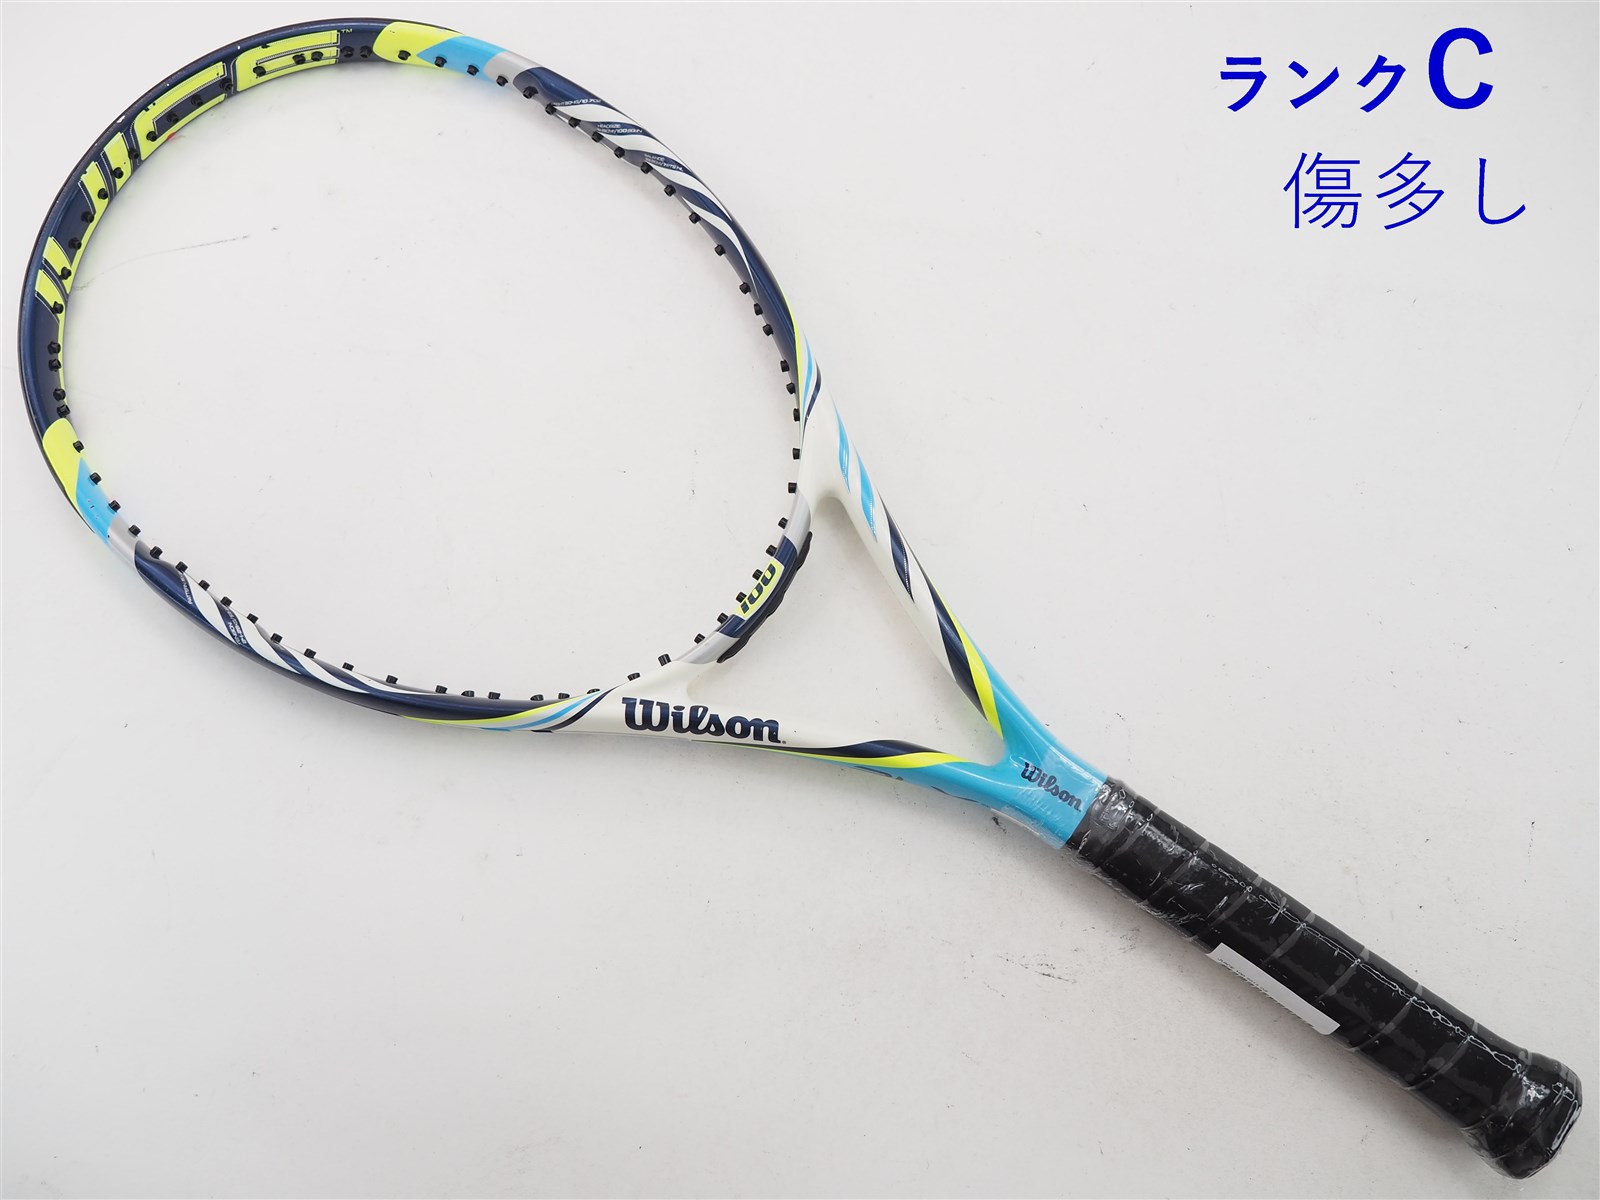 Wilson ウィルソン テニスラケット JUICE 100 Amplifeel - ラケット 